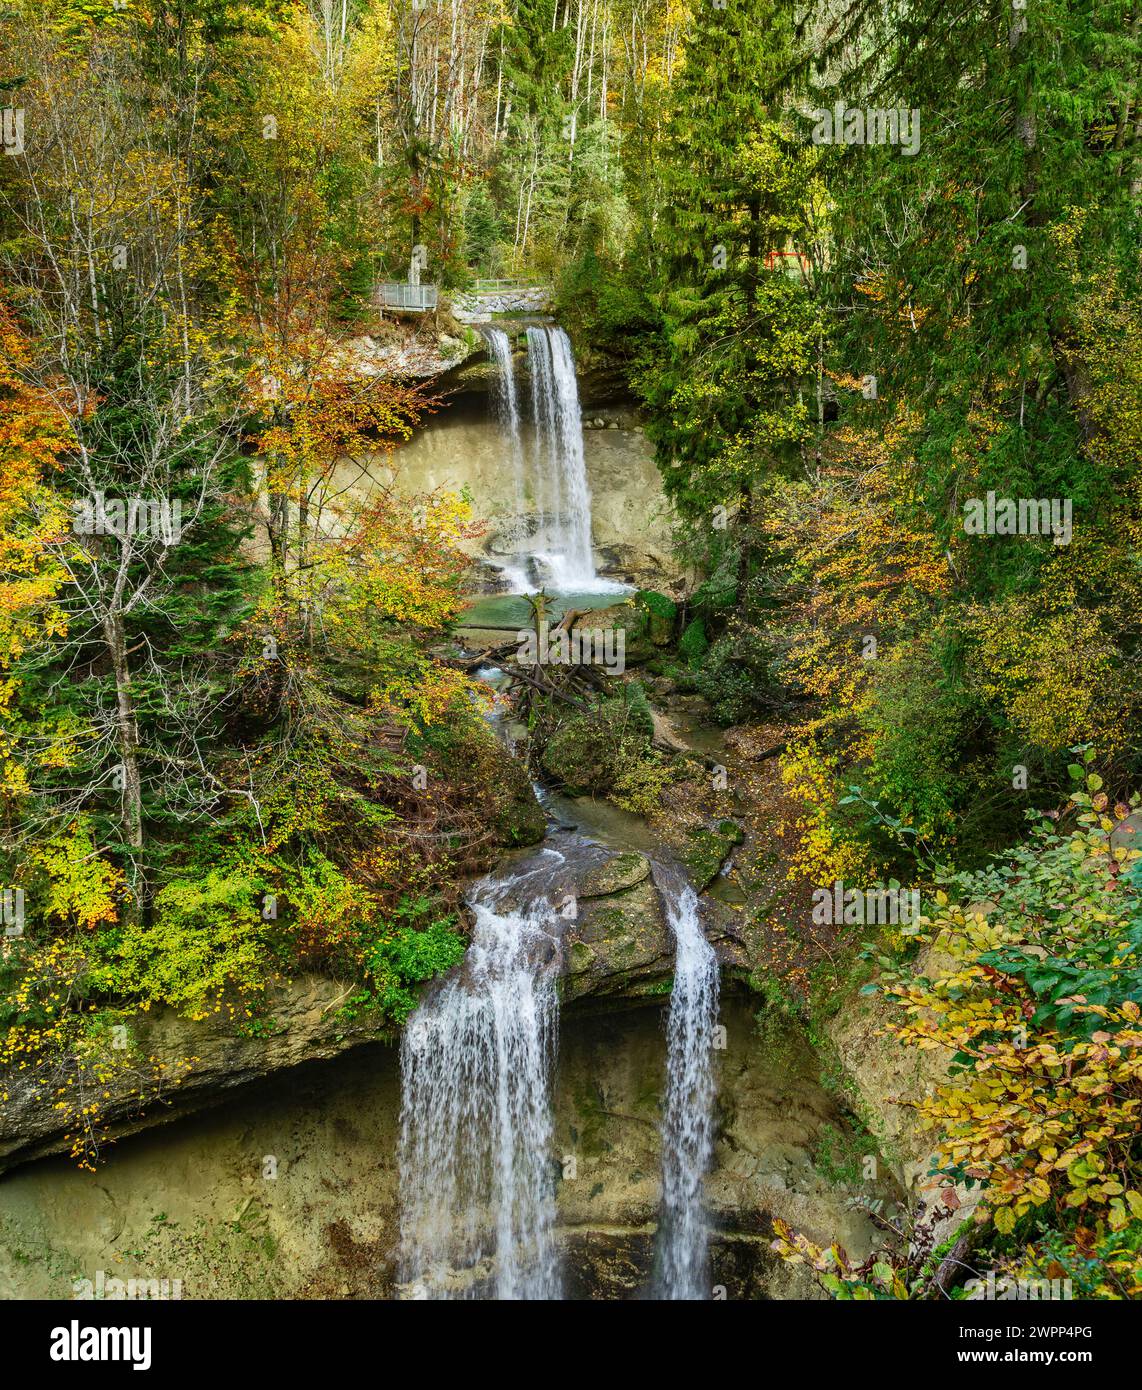 Germania, Baviera, Scheidegg, cascate Scheidegg, seconda e terza cascata. Le cascate di Scheidegg sono nella lista dei geotopi più belli della Baviera. Foto Stock